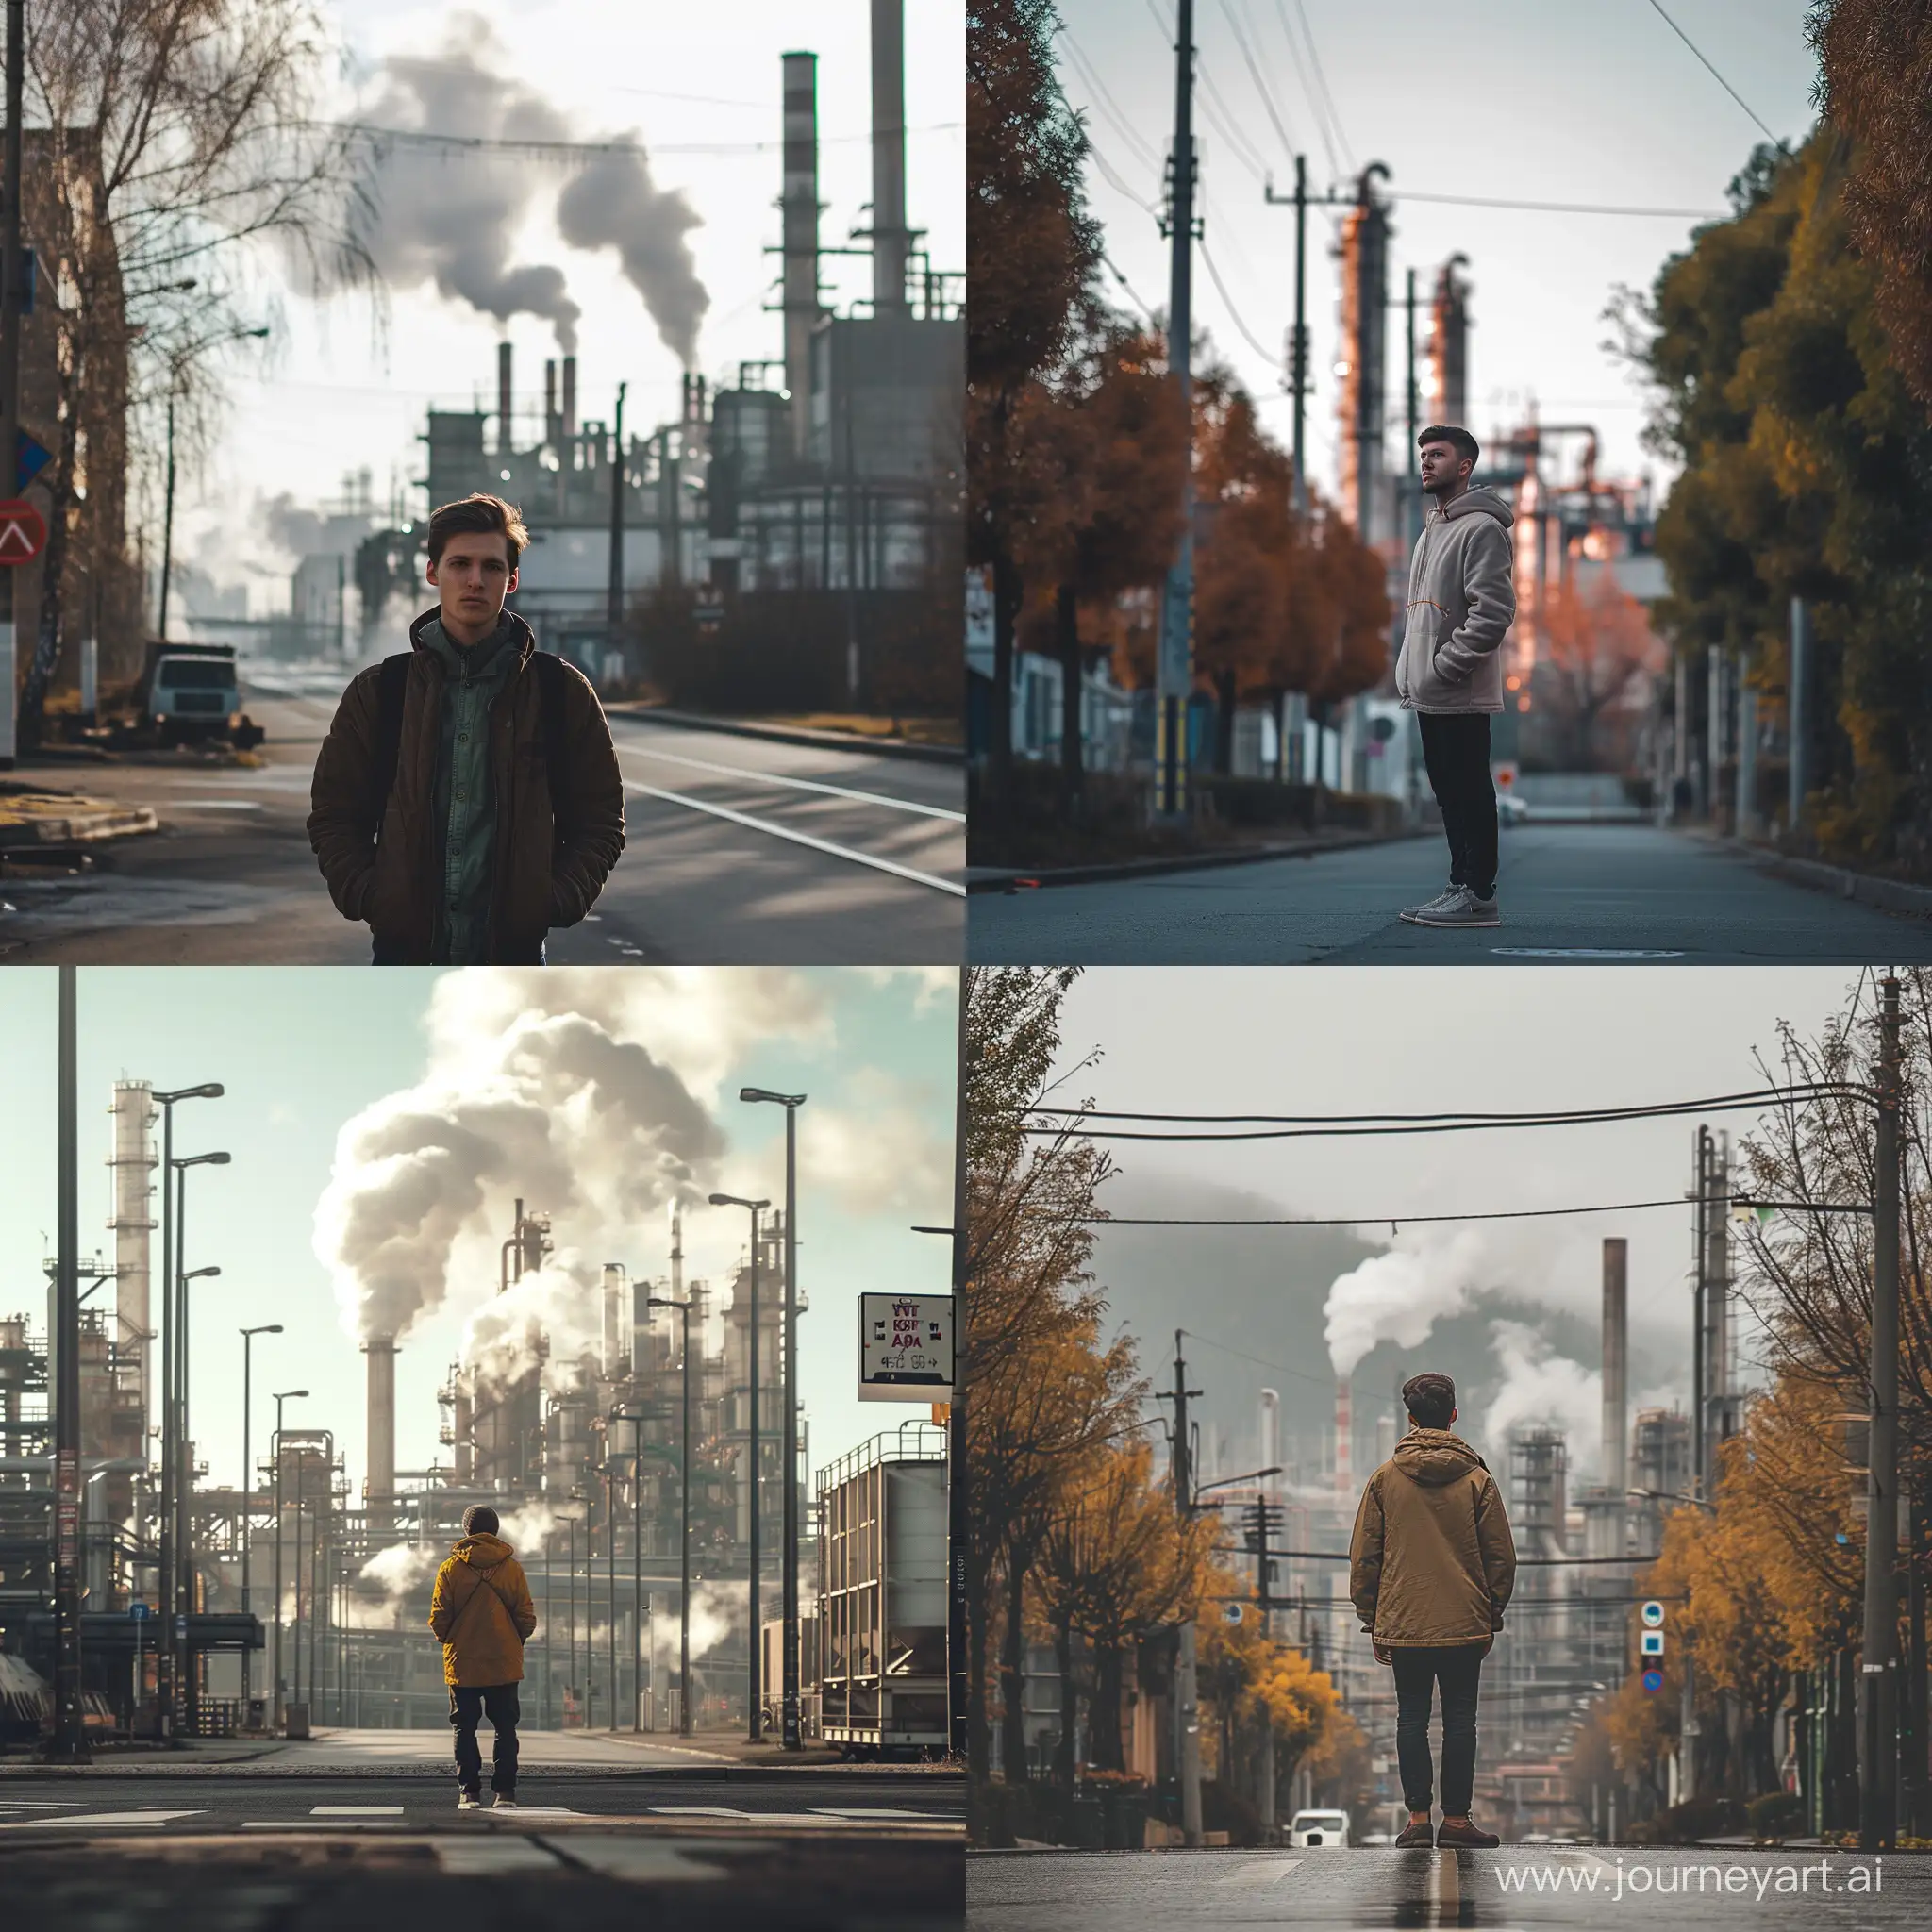 Реалистичное фото, парень стоит на улице, а сзади него стоит завод